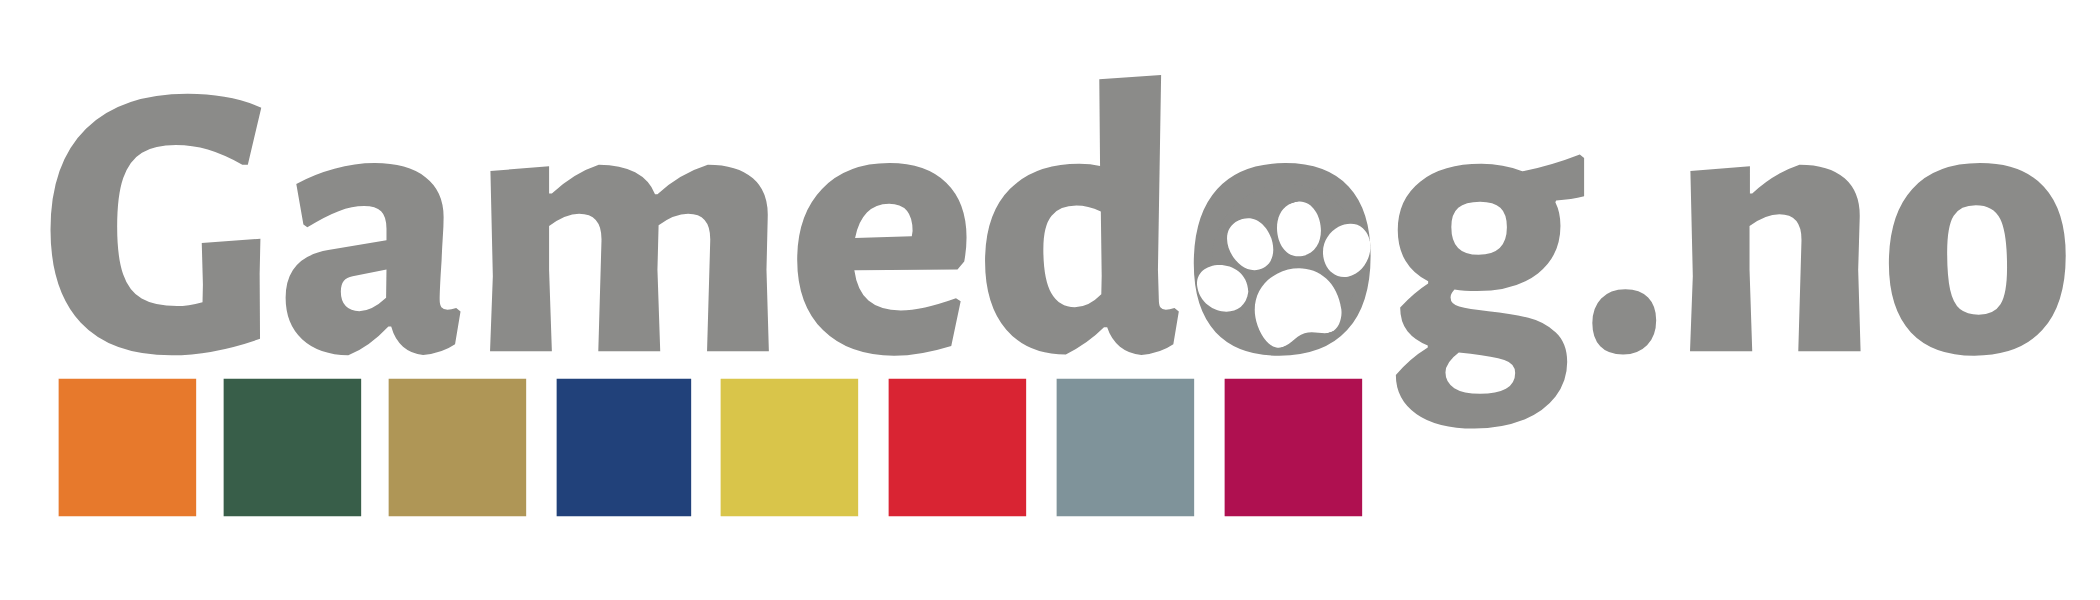 Omtale og erfaring med Gamedog Hundefòr